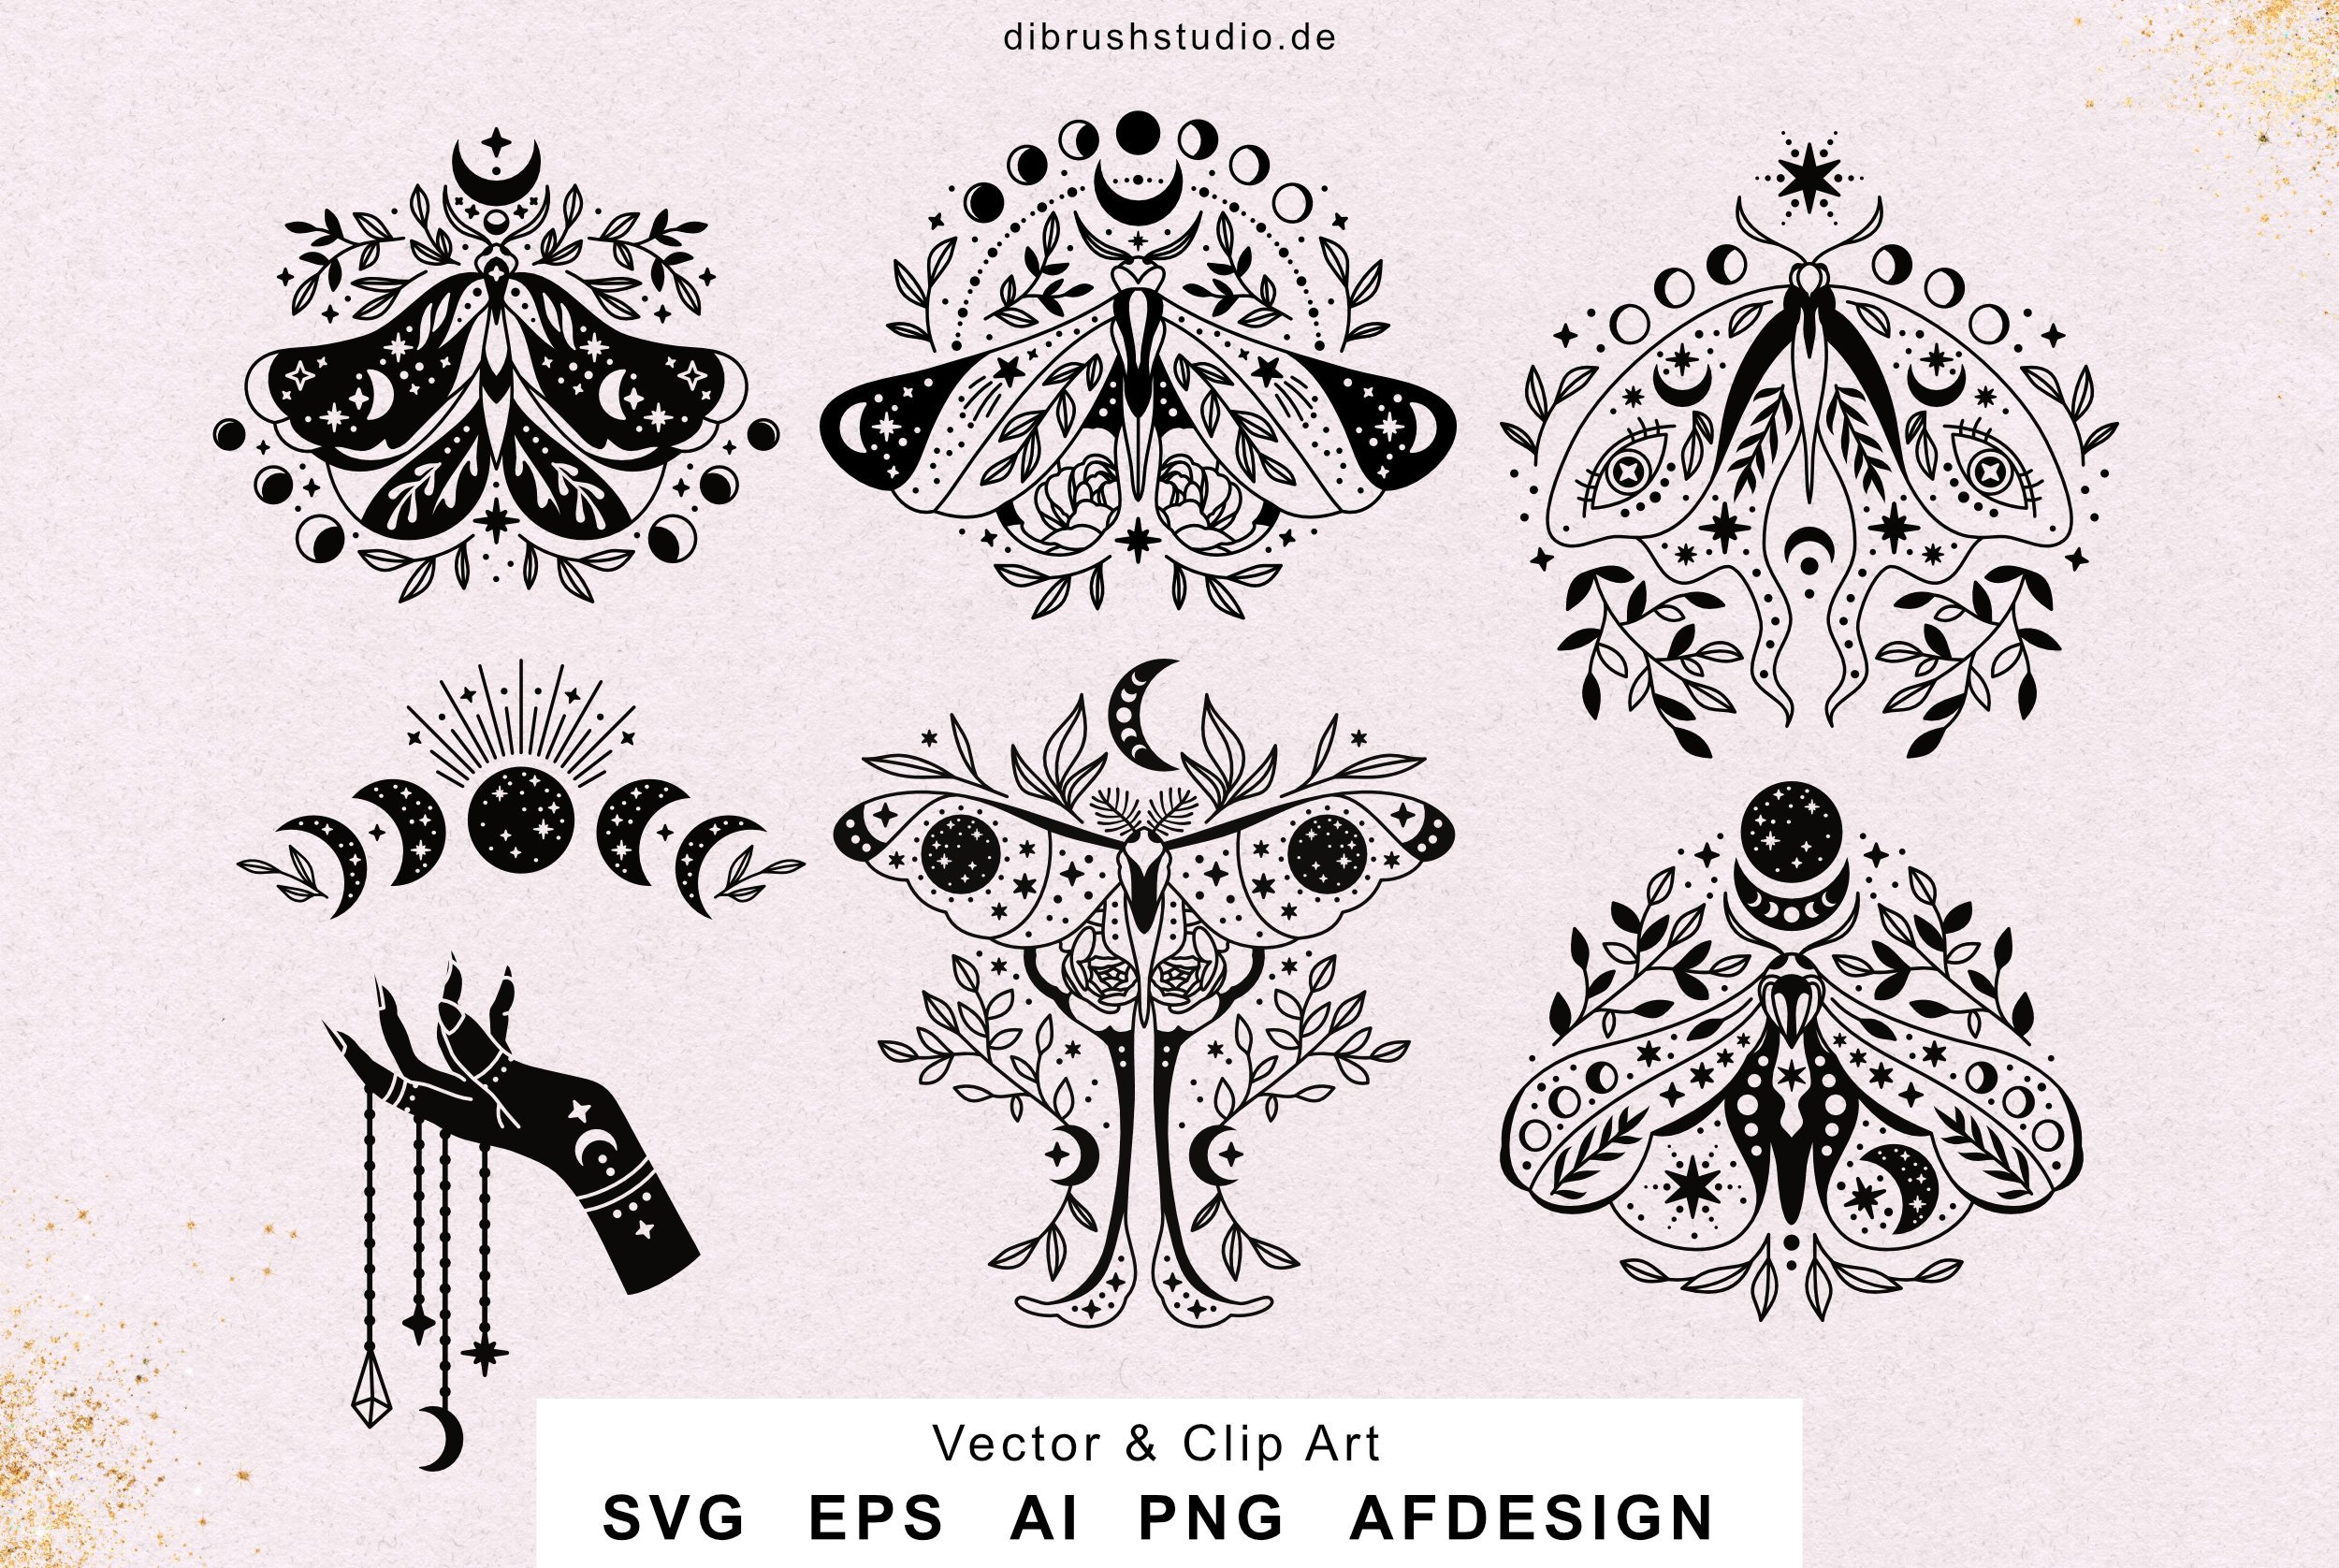 Mystical Moth SVG Bundle cover image.